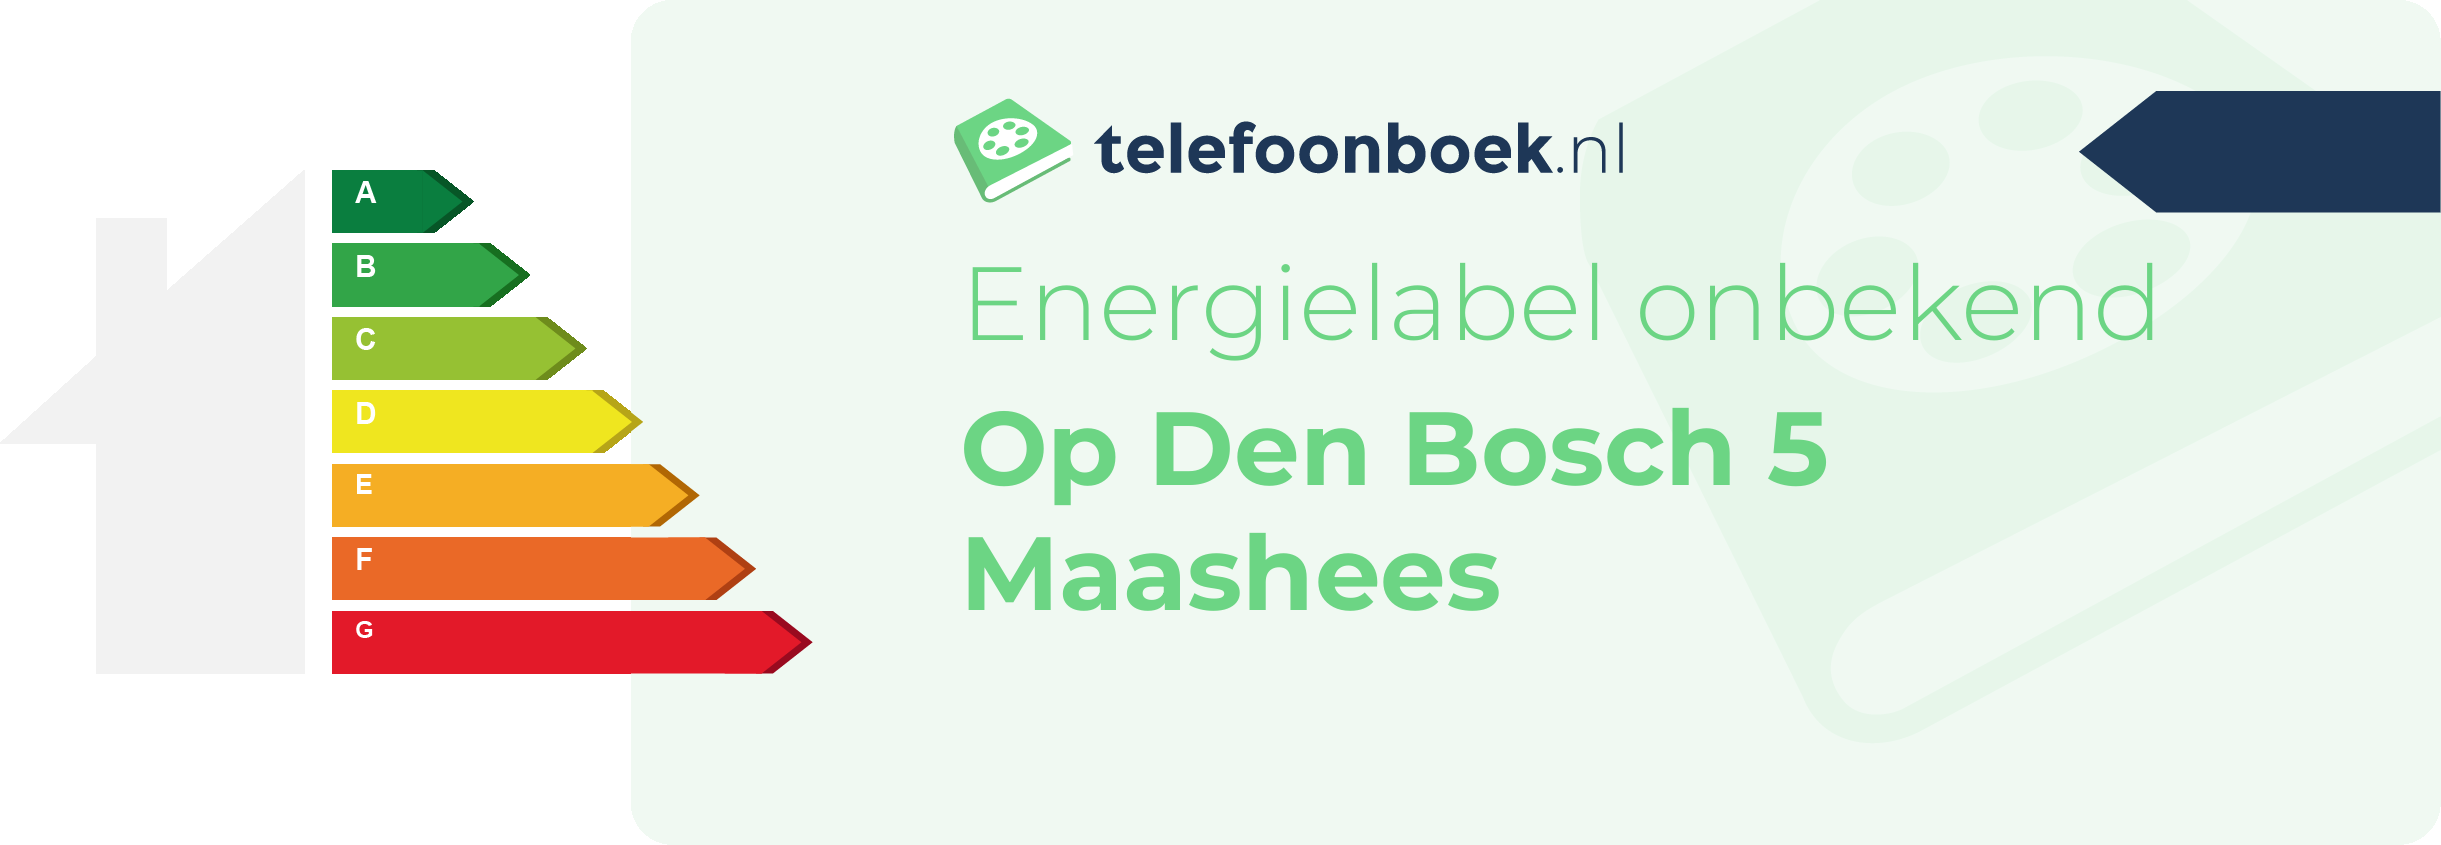 Energielabel Op Den Bosch 5 Maashees